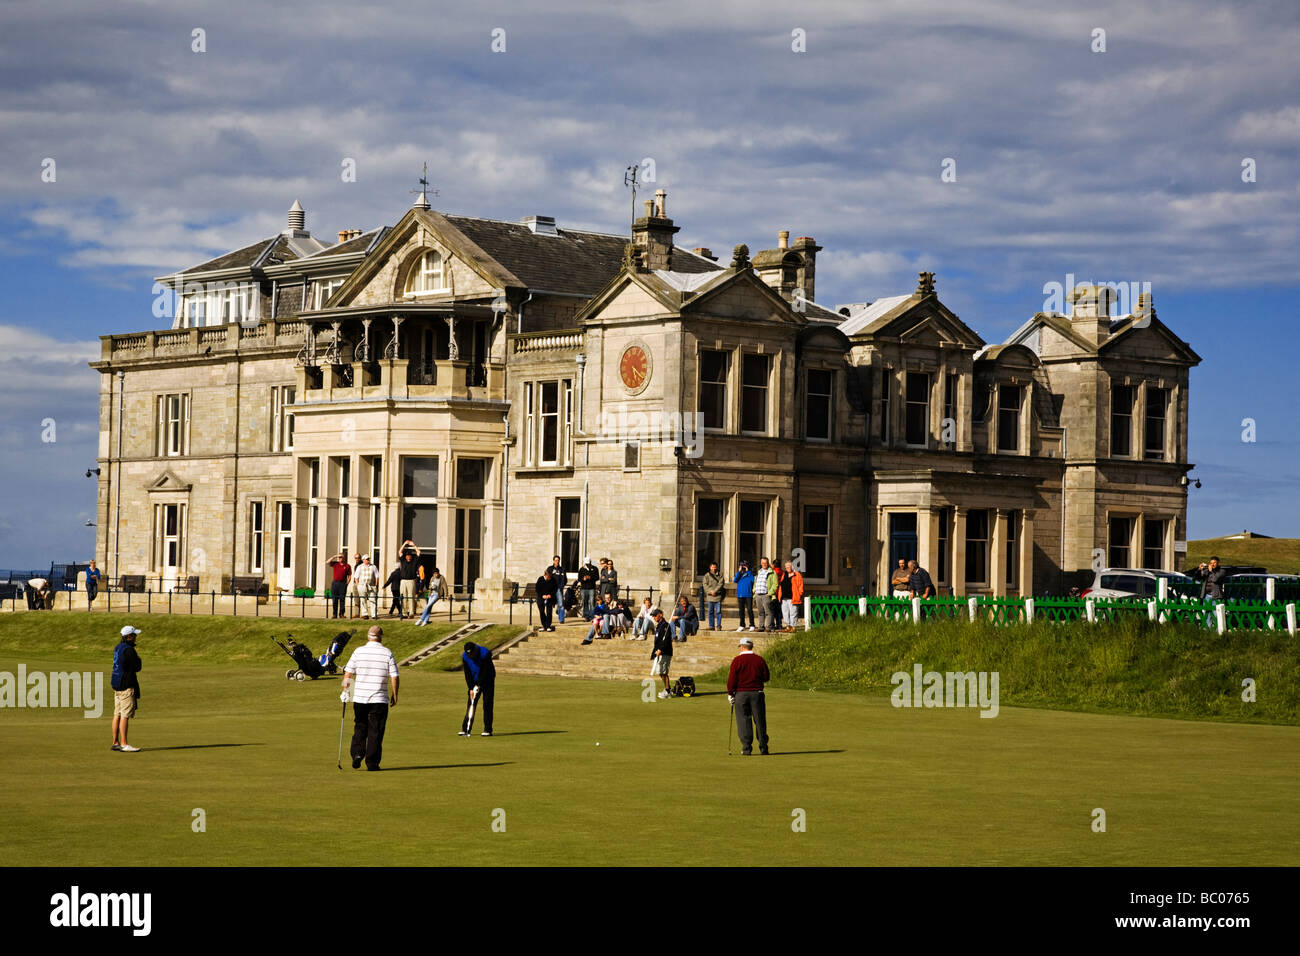 Le 18ème green et Clubhouse sur l'ancien cours de la Royal and Ancient Golf Club, St Andrews, Fife, en Écosse. Banque D'Images